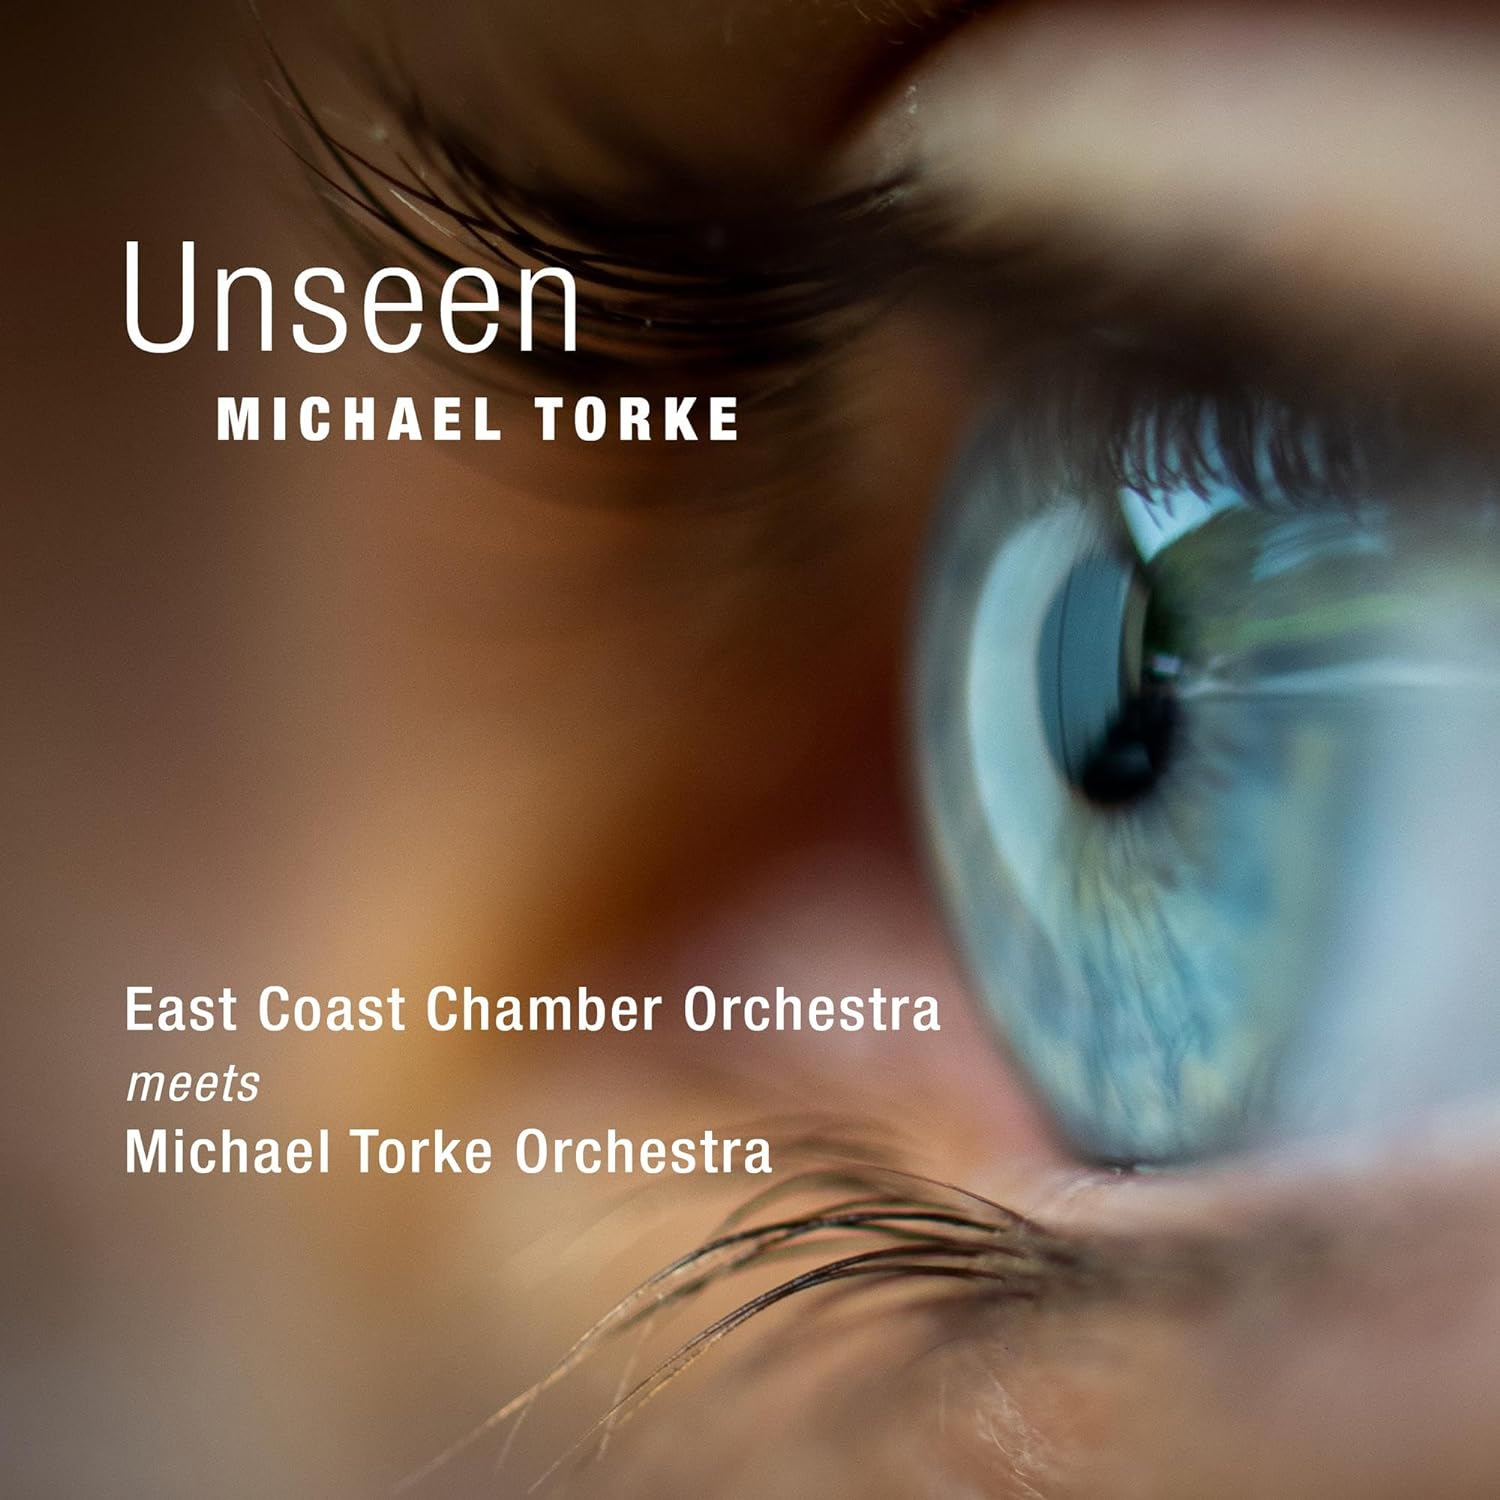 Wisconsin native Michael Torke releases ‘Unseen’